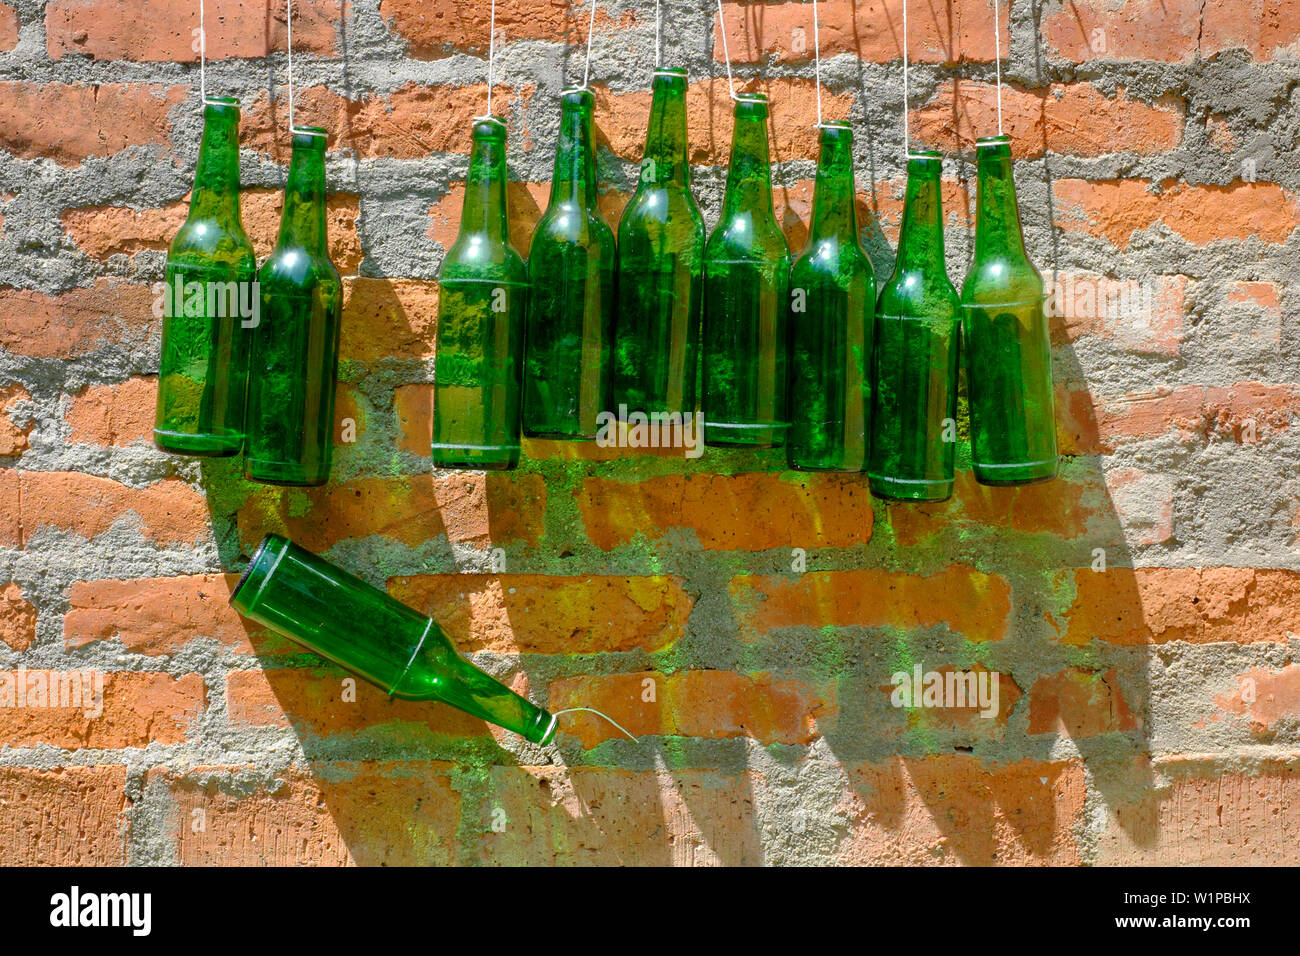 Dieci bottiglie verdi appeso a una parete con una caduta di Zala county Ungheria Foto Stock